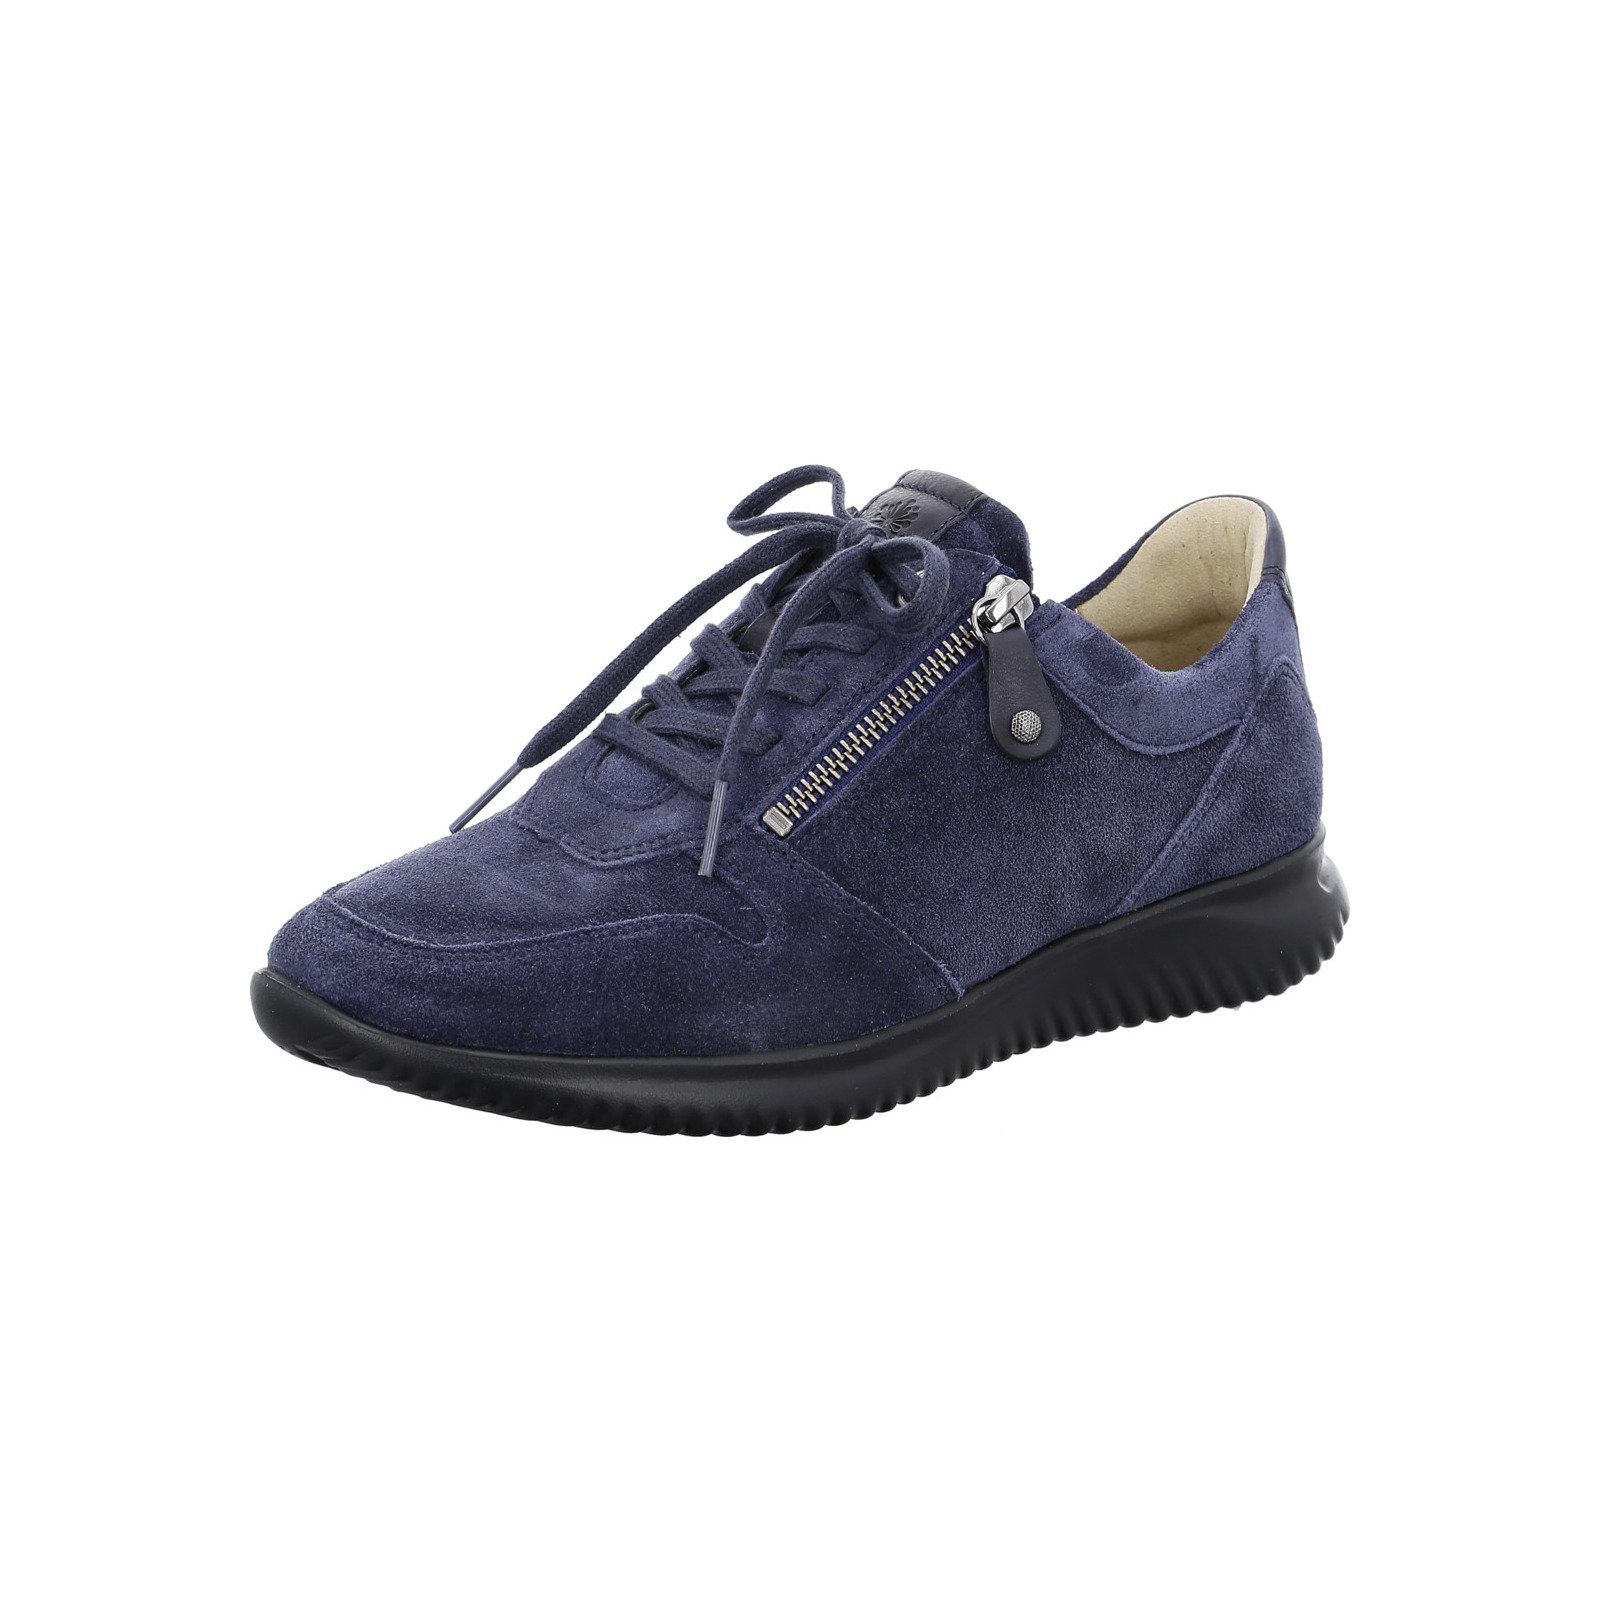 Hartjes Breeze - Damen Schuhe Schnürschuh Sneaker Velours blau